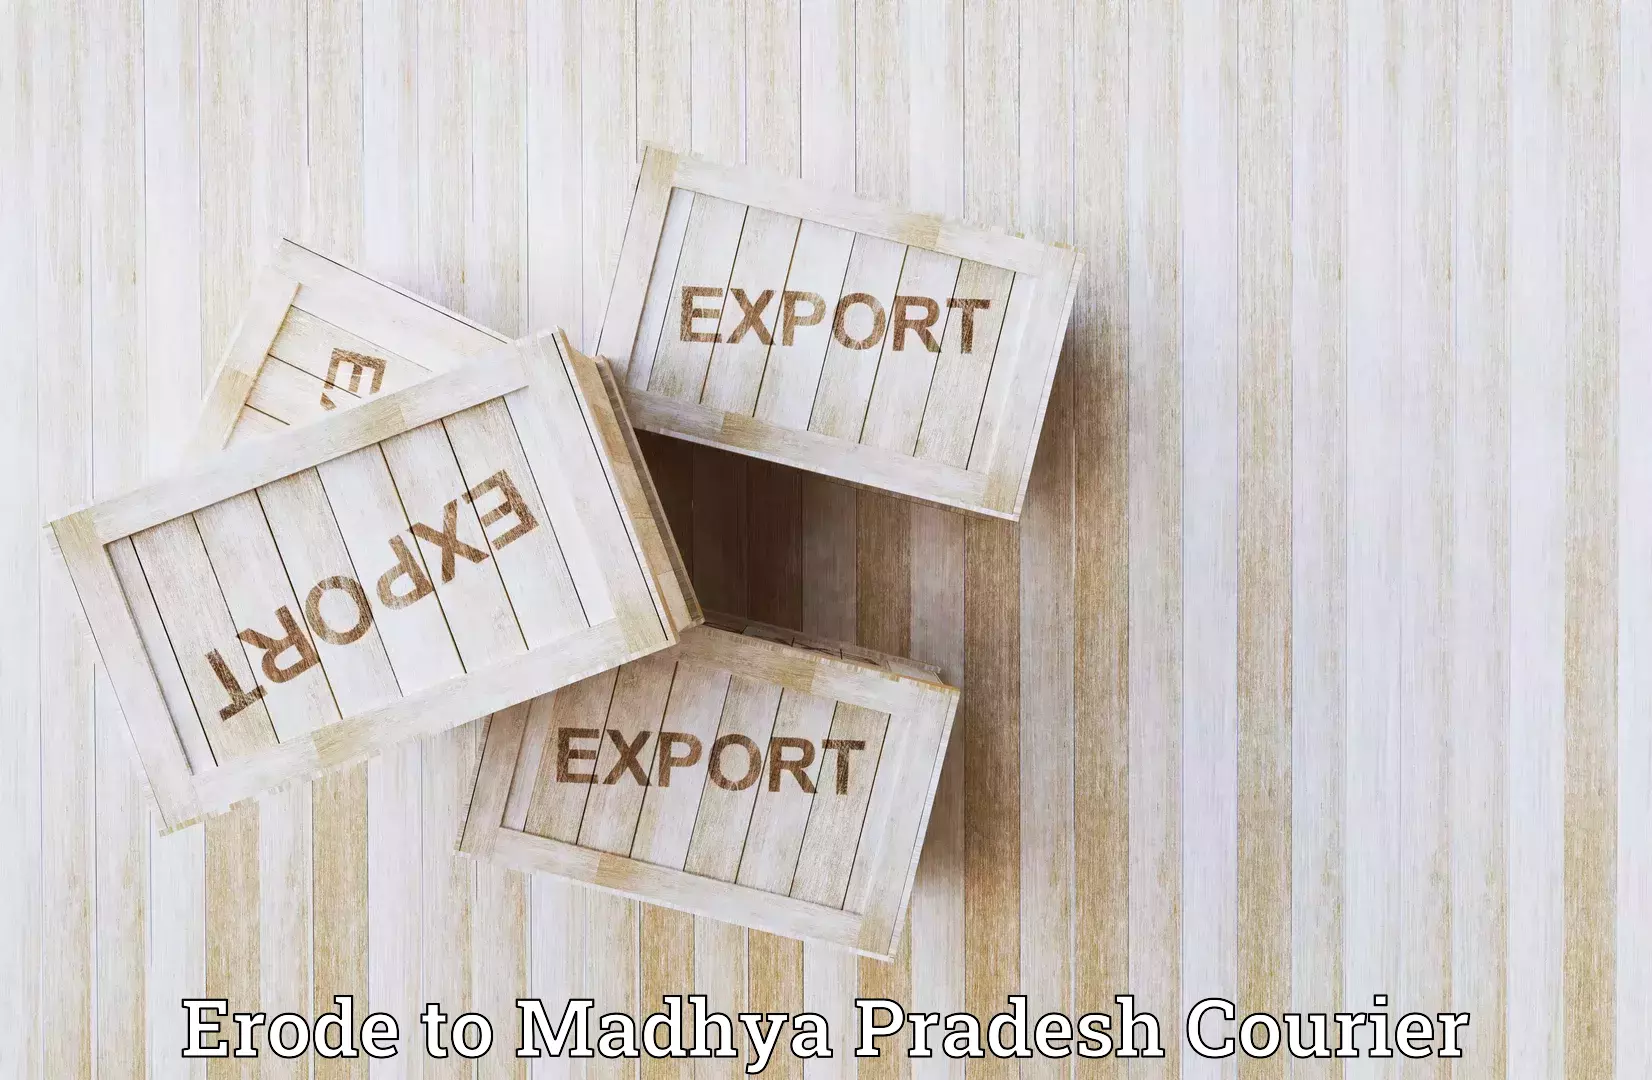 Business shipping needs Erode to Vidisha